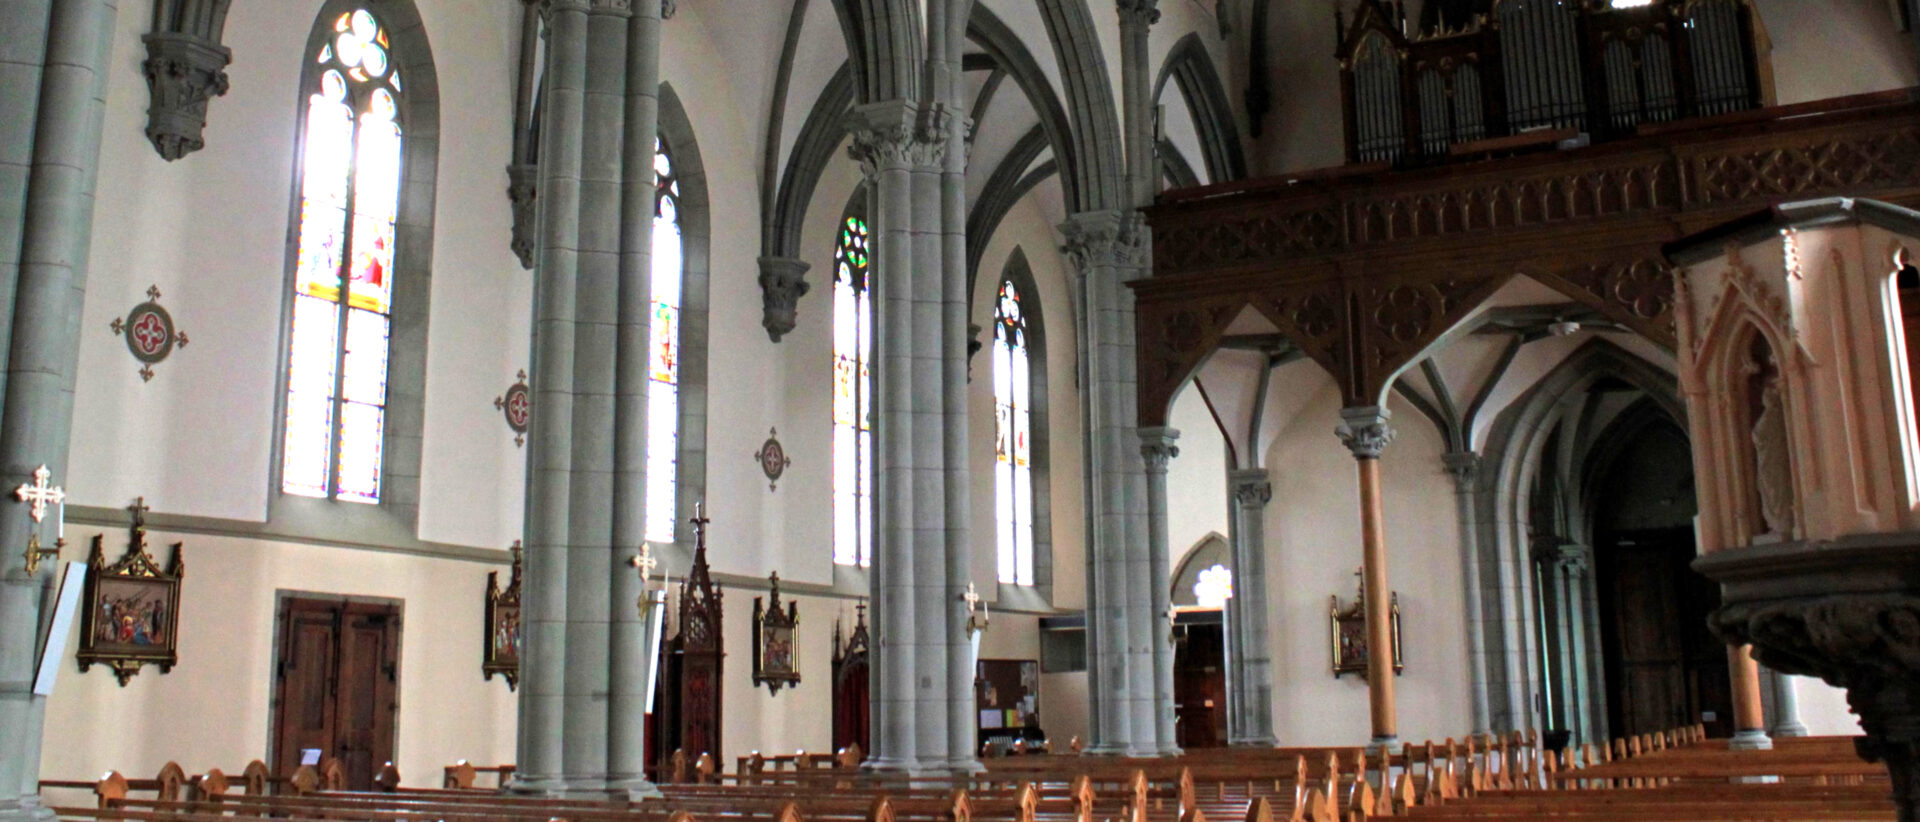 L'intérieur de l'église de Châtel-Saint-Denis (FR) | © Odrade123/Wikimedia Commons/CC BY-SA 4.0